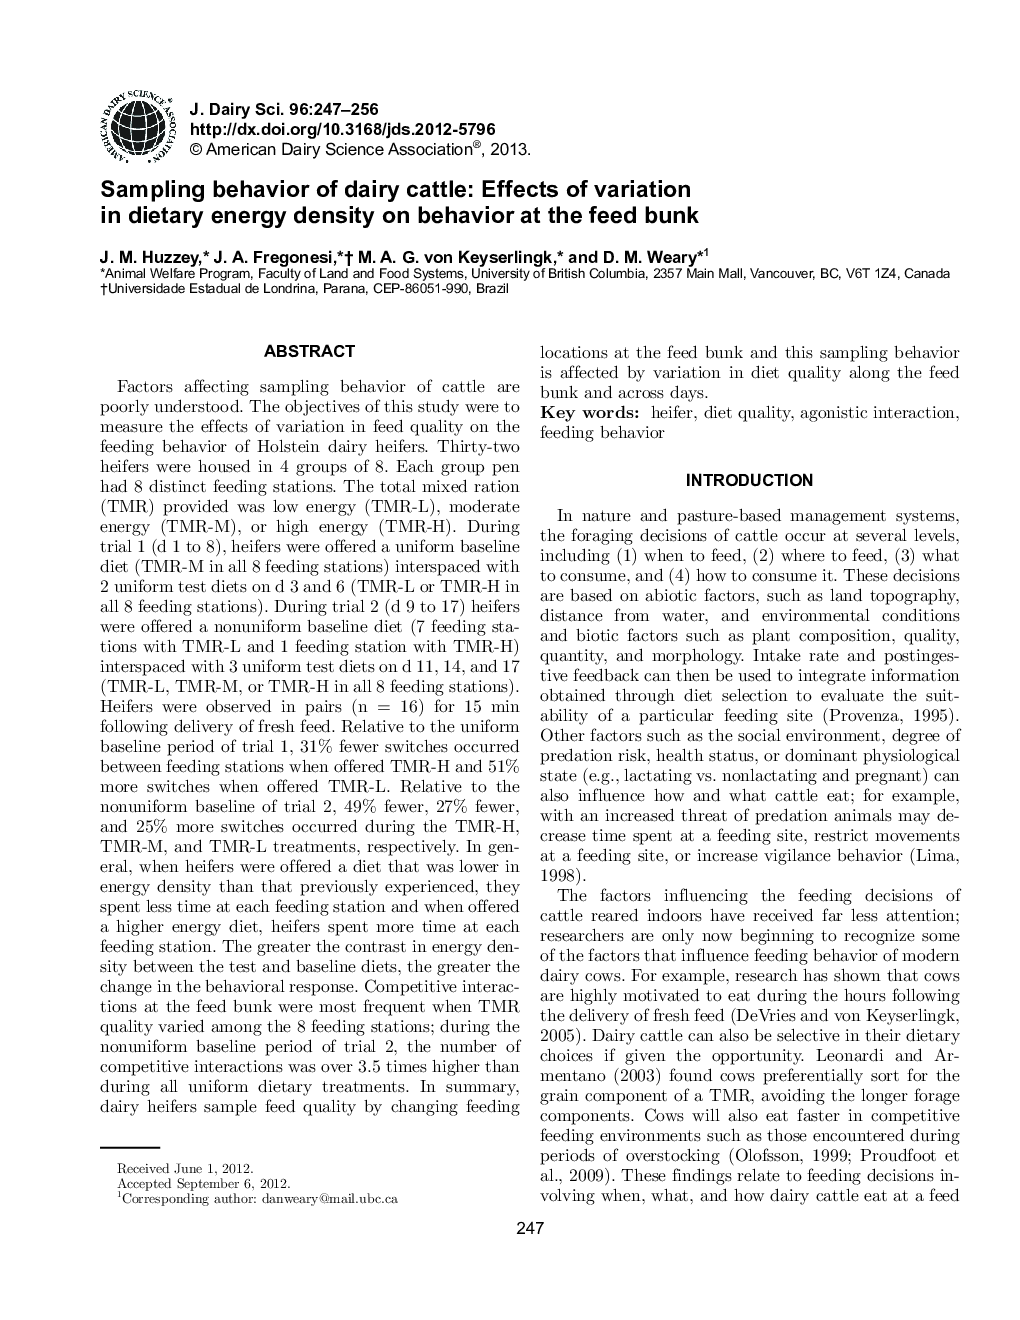 رفتار نمونه گیری گاوهای شیری: تأثیر تغییرات در تراکم انرژی رژیم غذایی بر رفتار خوشه های خوراکی 